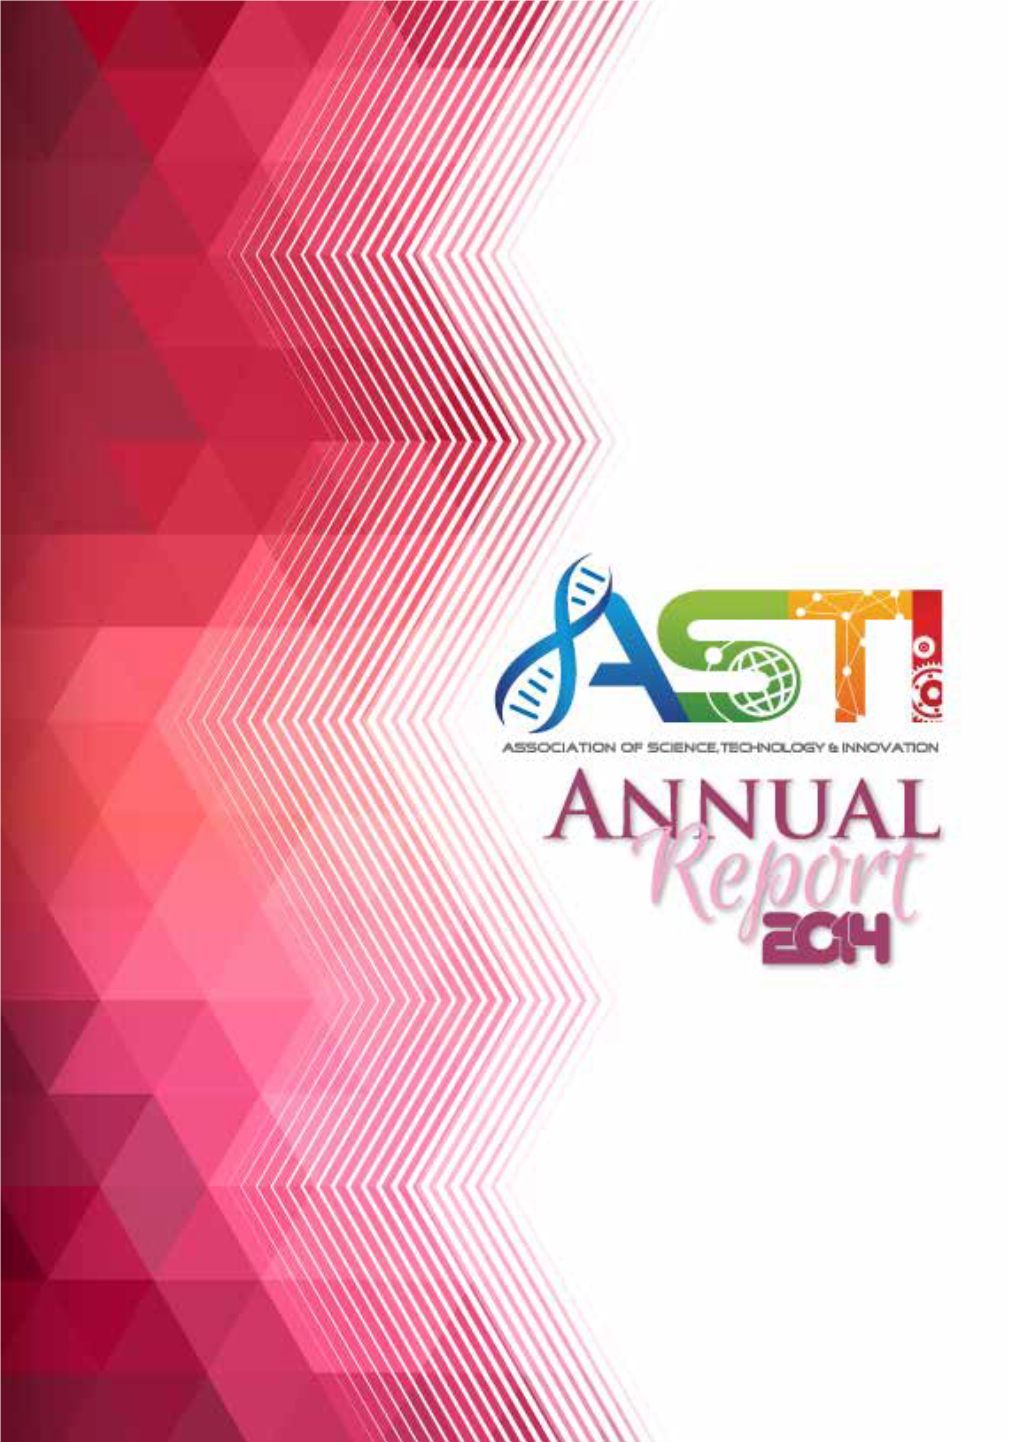 ASTI Annual Report 2014